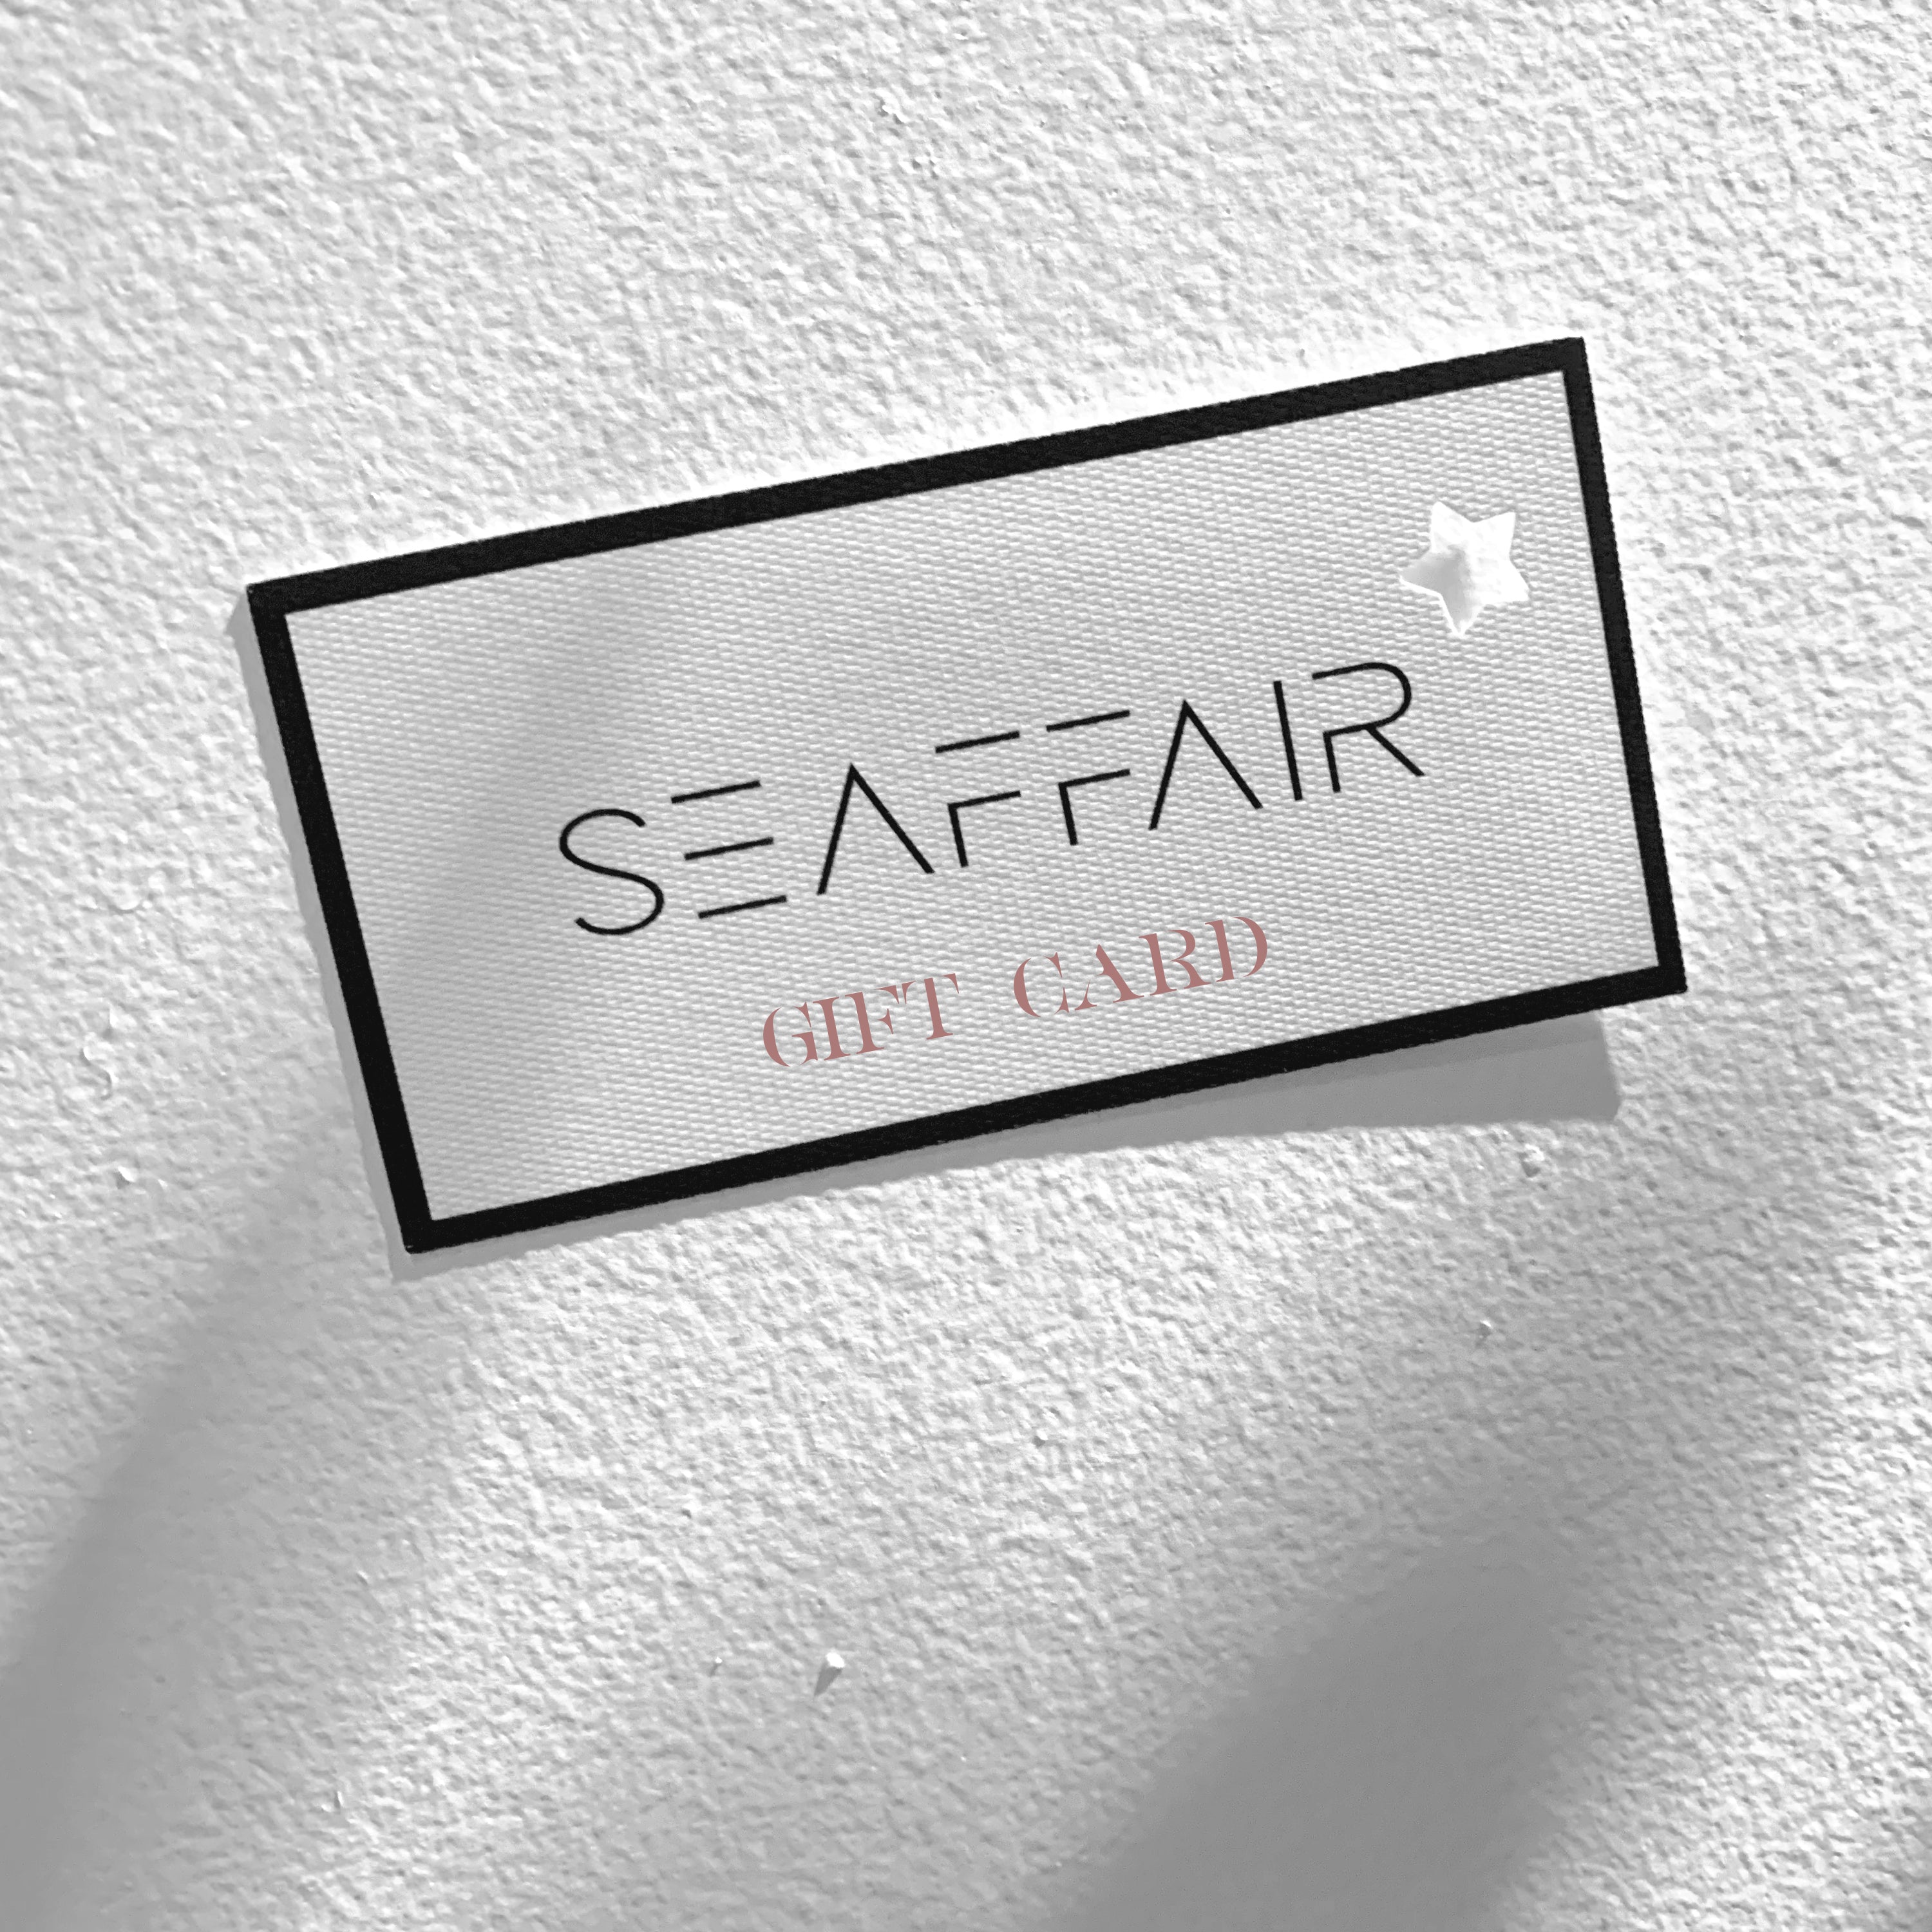 Gift Card Seaffair